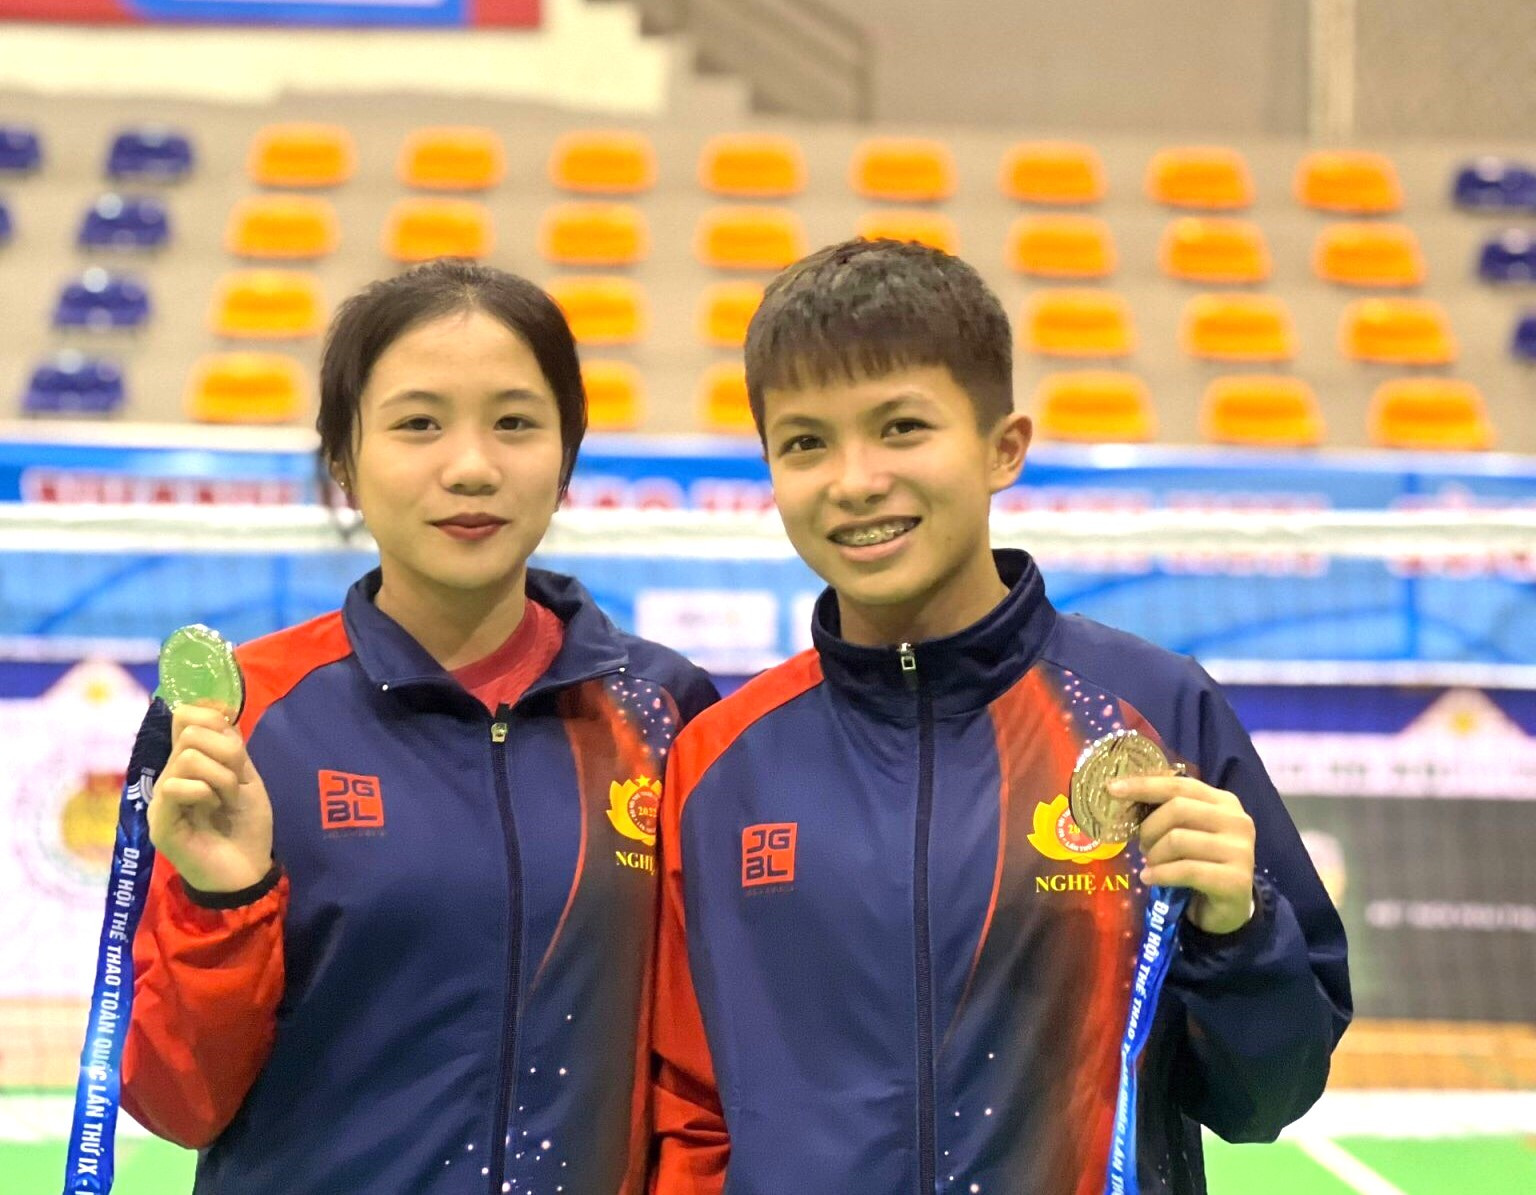 Trương Thanh Thảo và Đào Thị Kim Oanh giành huy chương Vàng nội dung đội tuyển 2 tại Giải vô địch cầu mây trẻ toàn quốc năm 2022.jpg